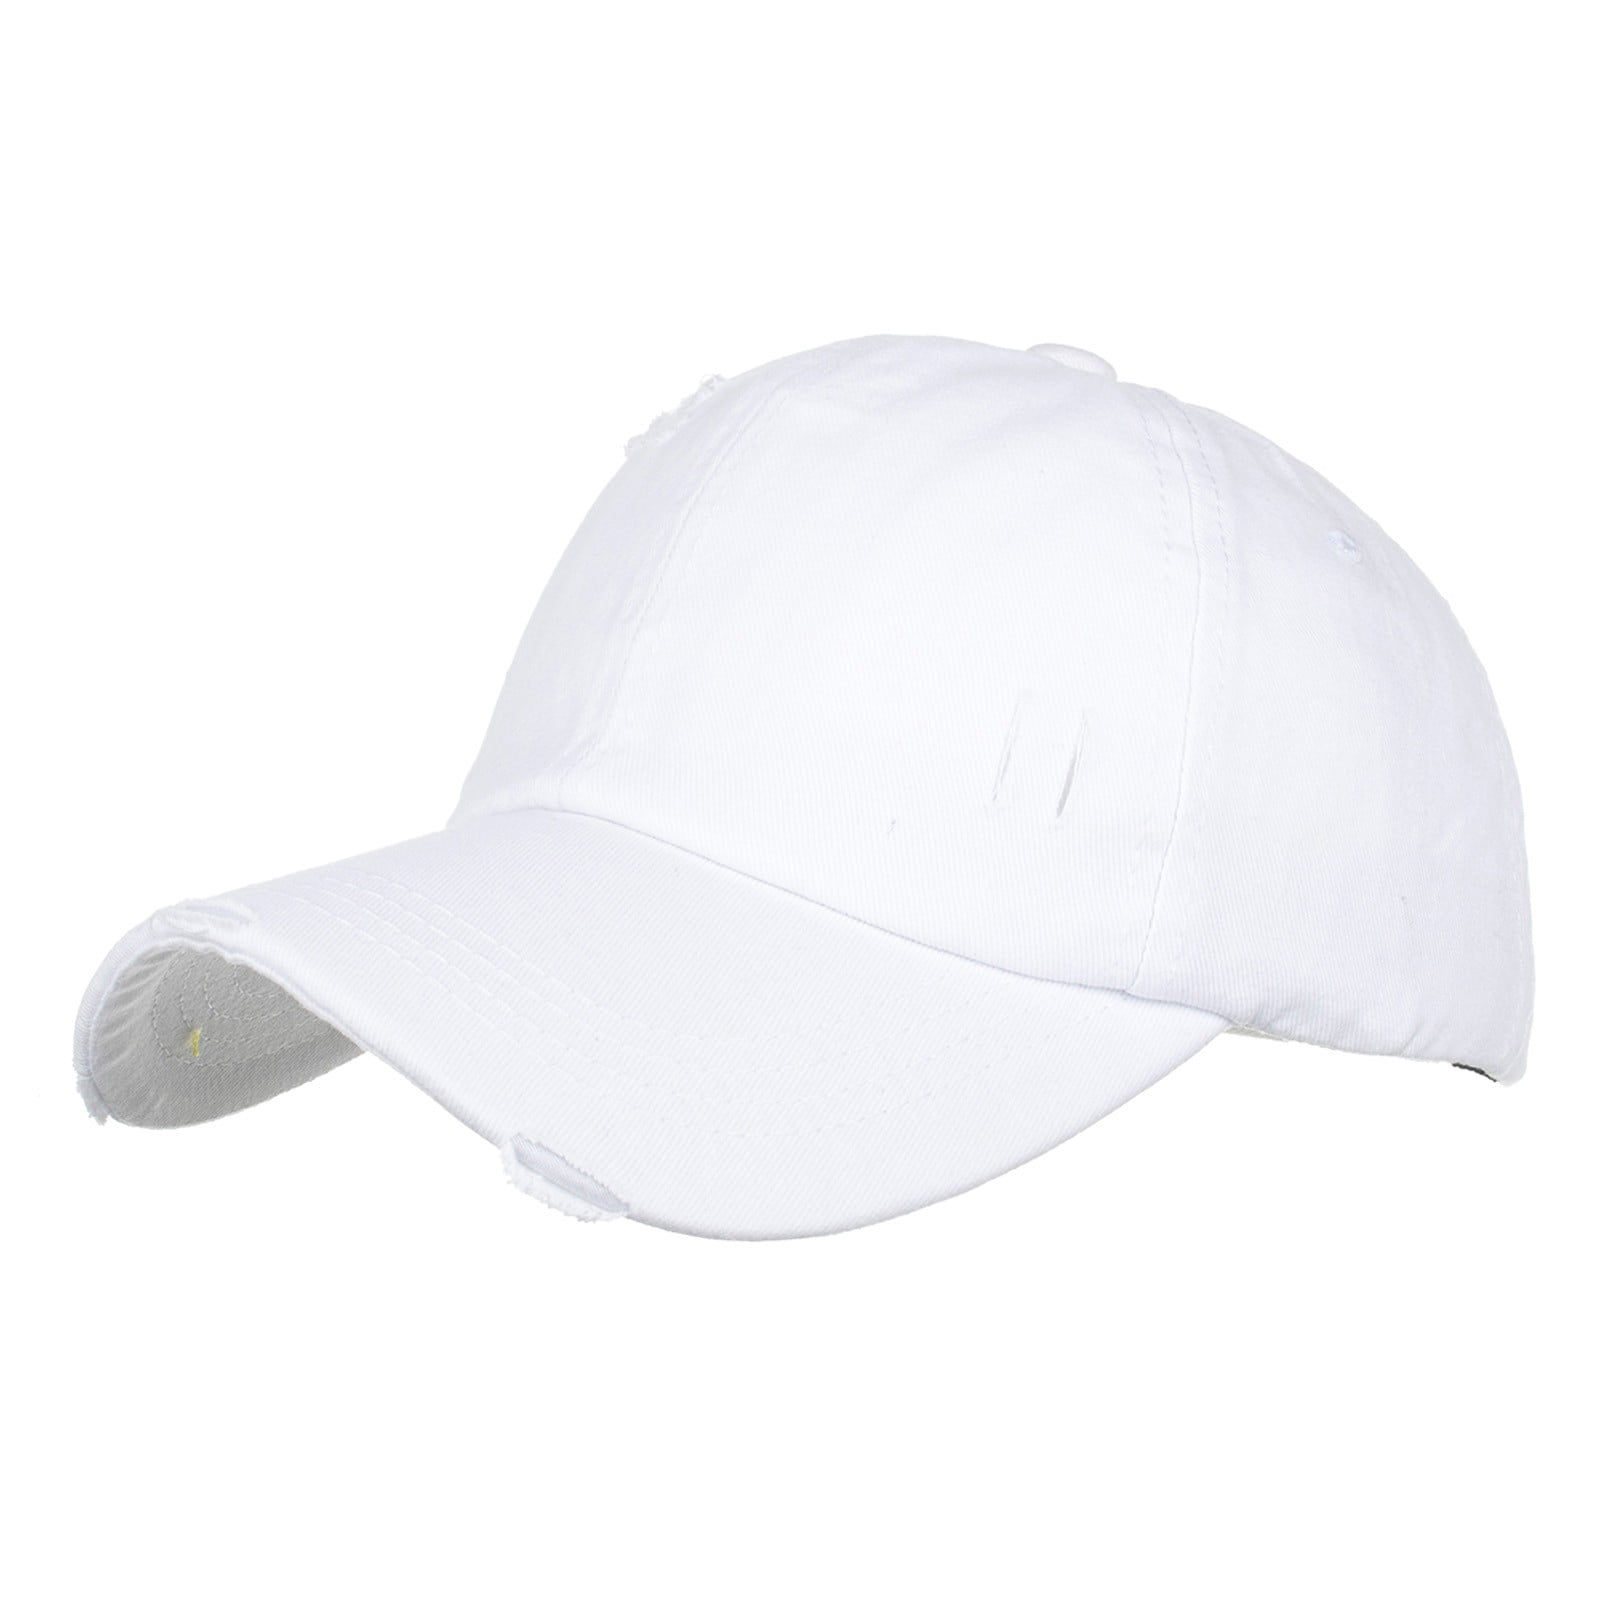 JDEFEG Hats for Men Women Man Bun Visor Hat Baseball Hop Beach Hat Men Cap  Sun Women Fashion Breathable Baseball Caps Visor Bucket Hat White